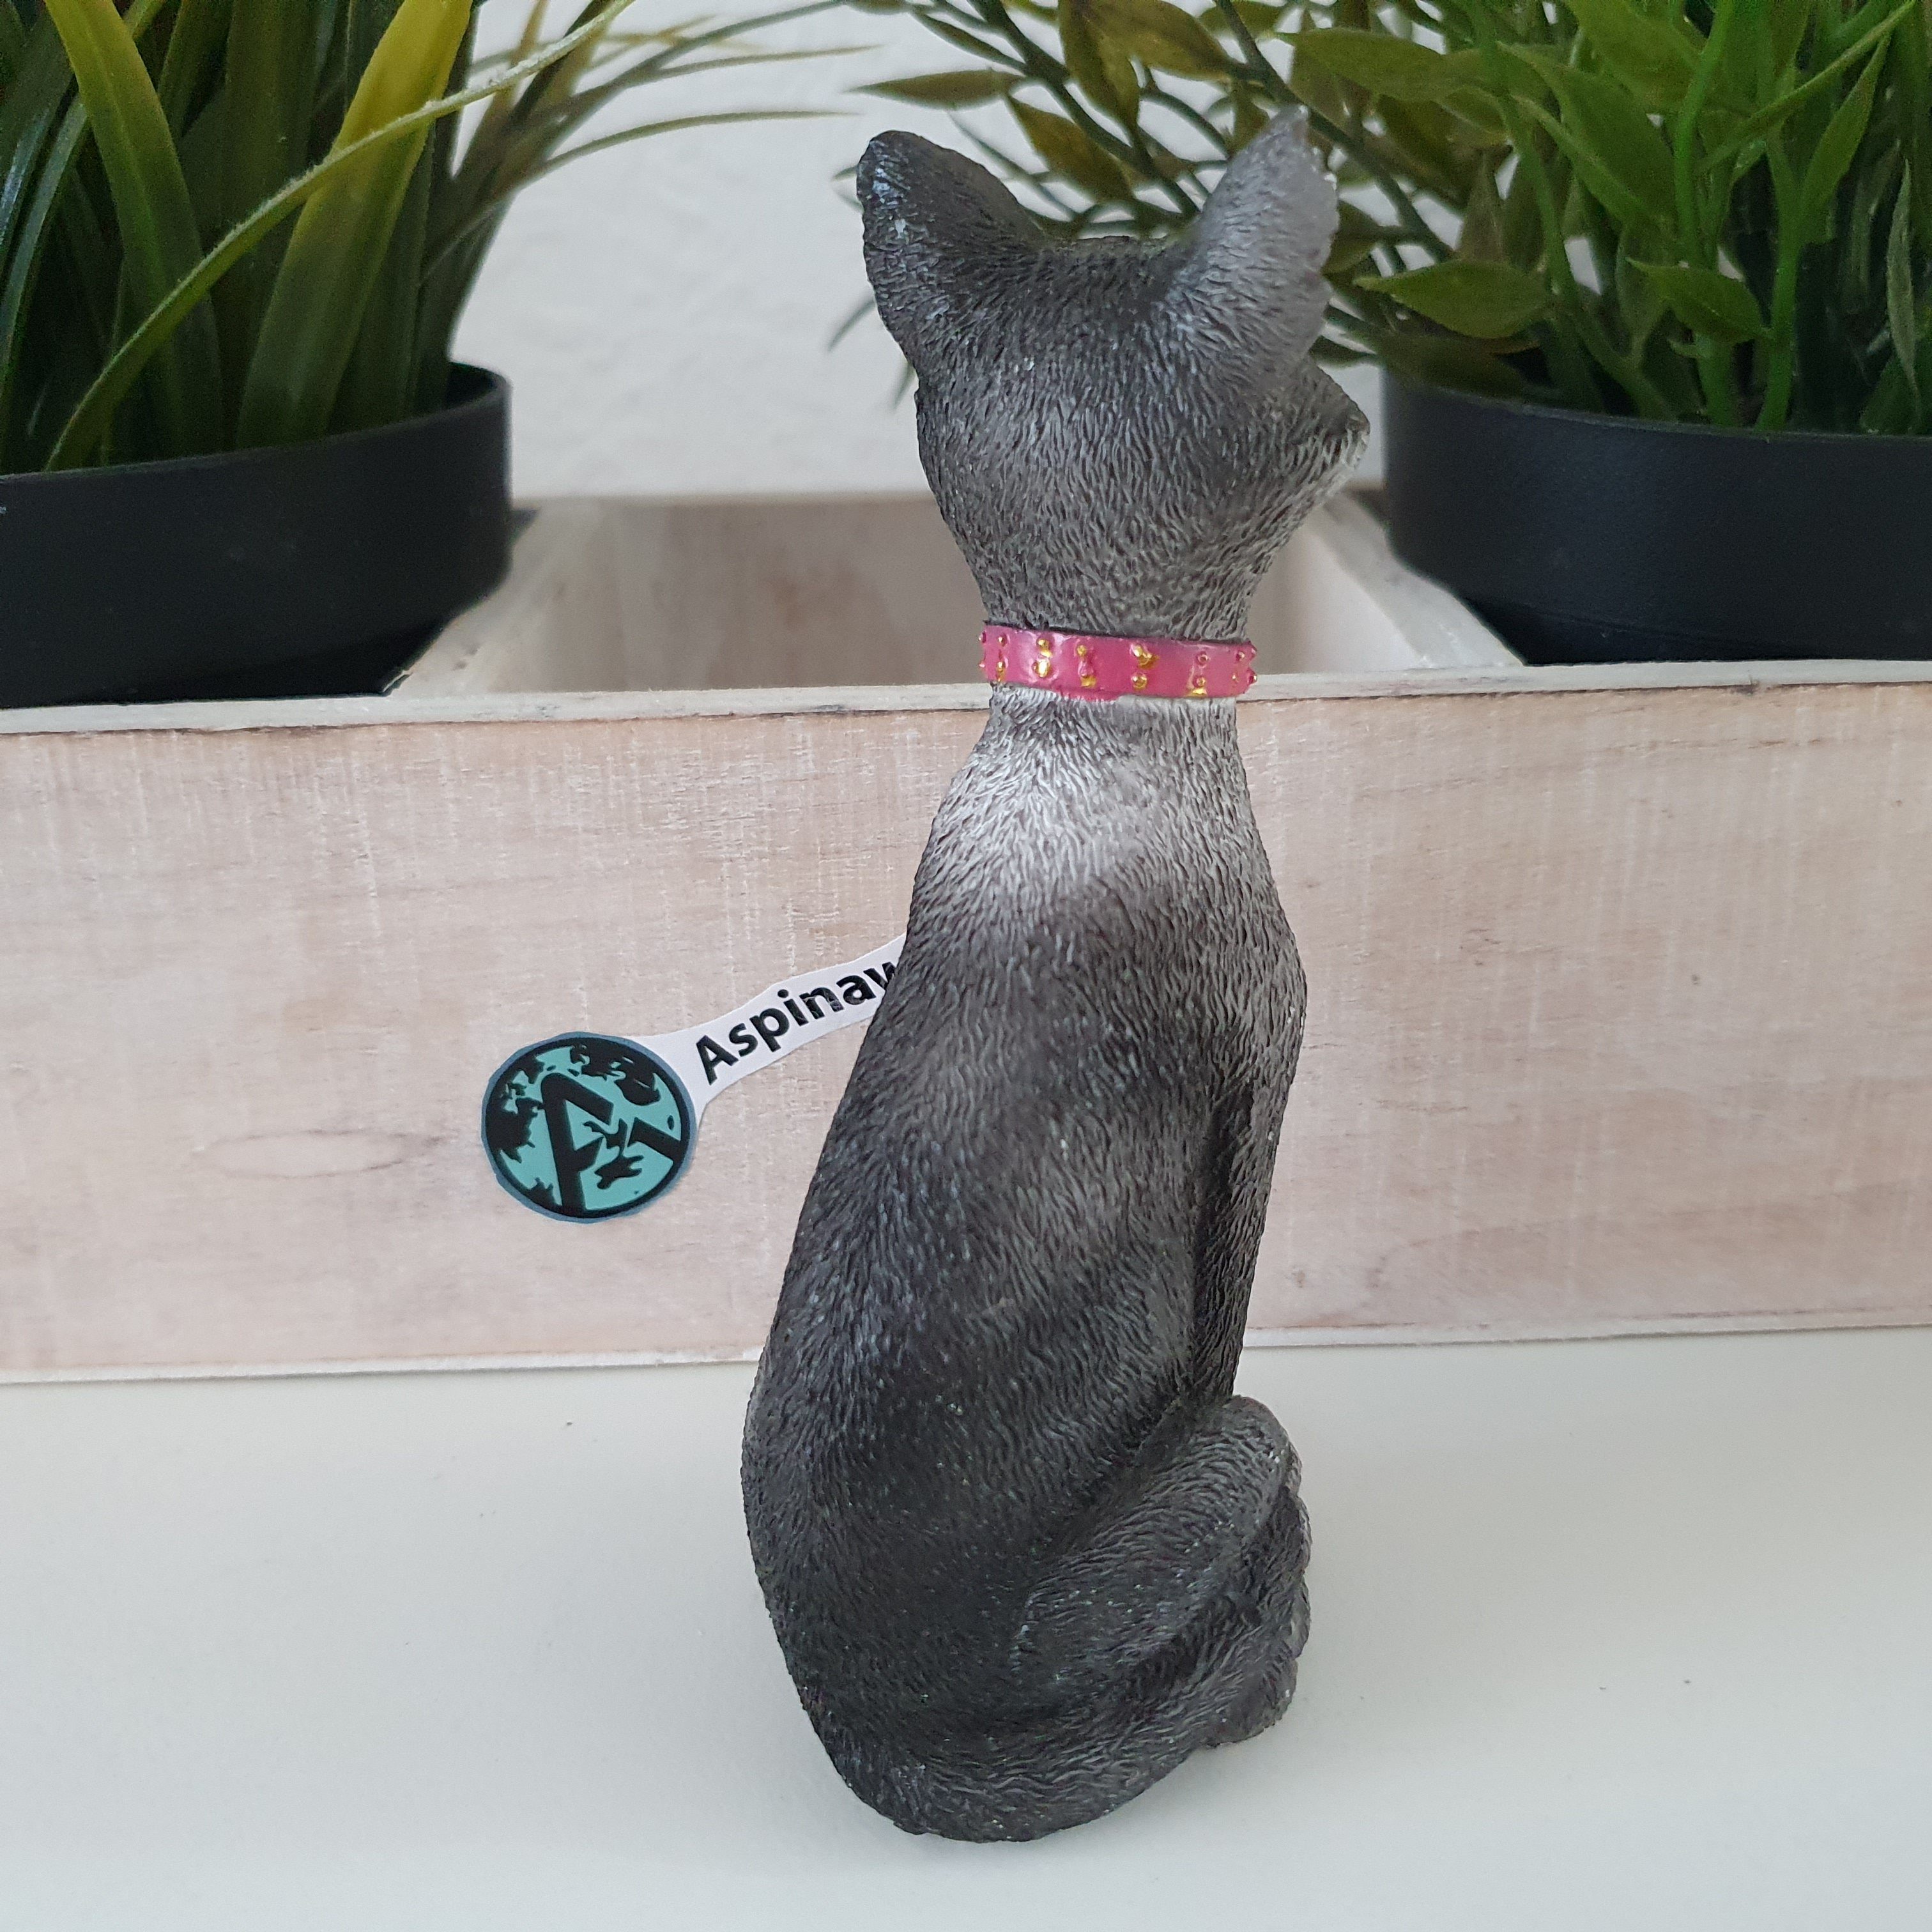 die Deko 12 Katze Aspinaworld Sitzt Katzenfigur cm Gartenfigur